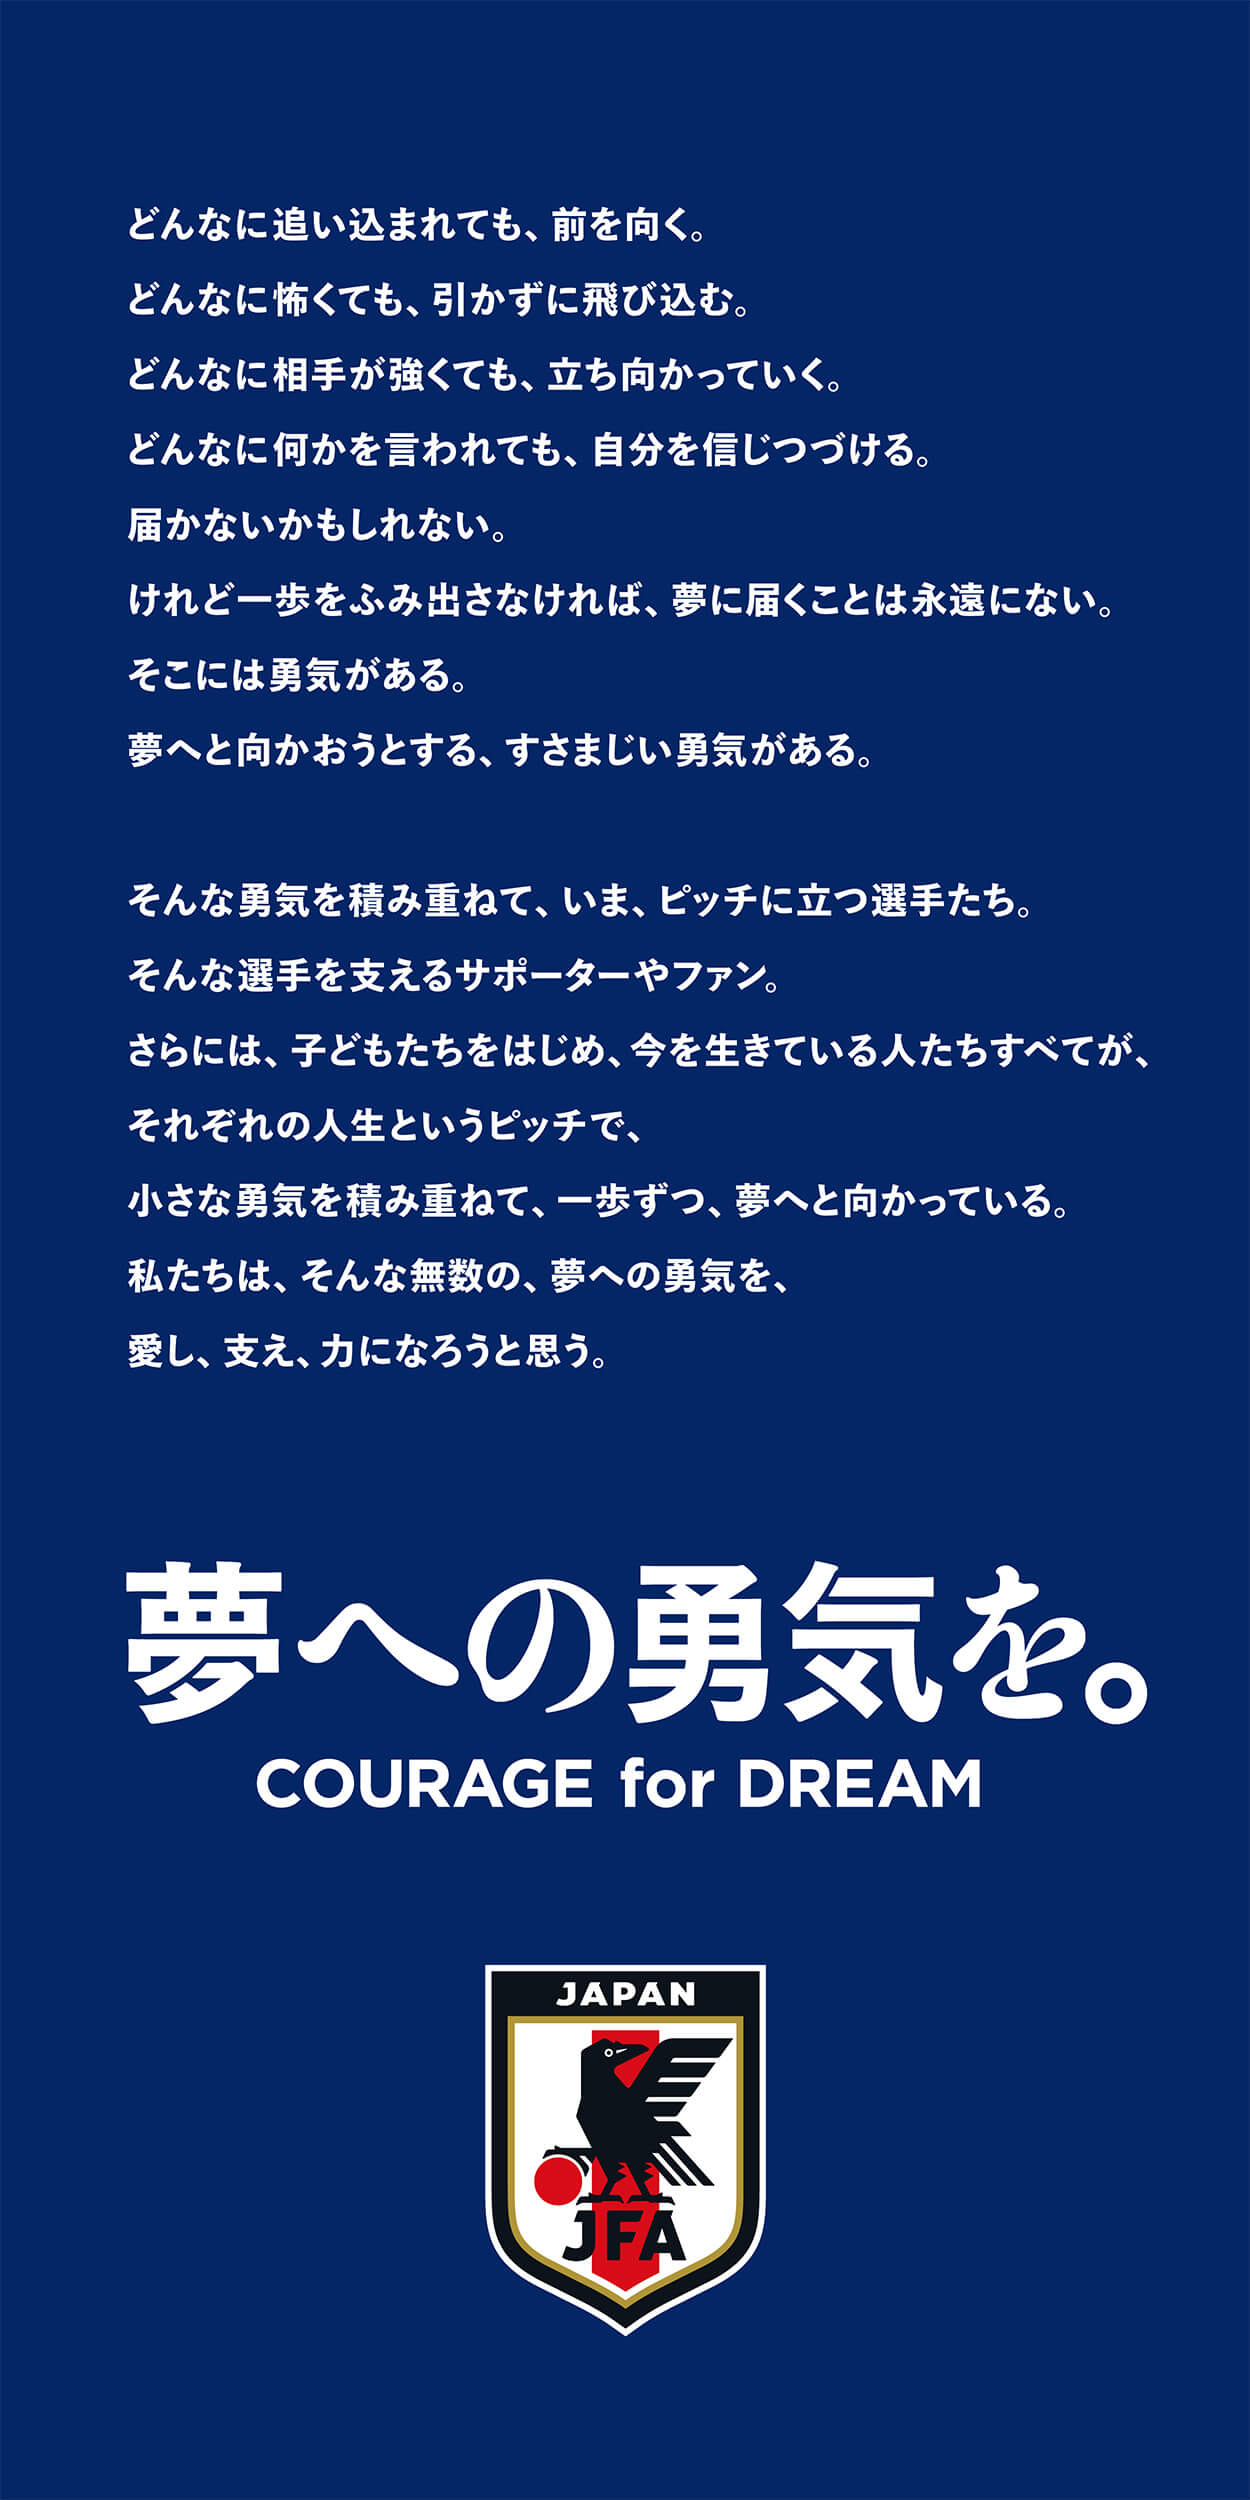 夢への勇気を。